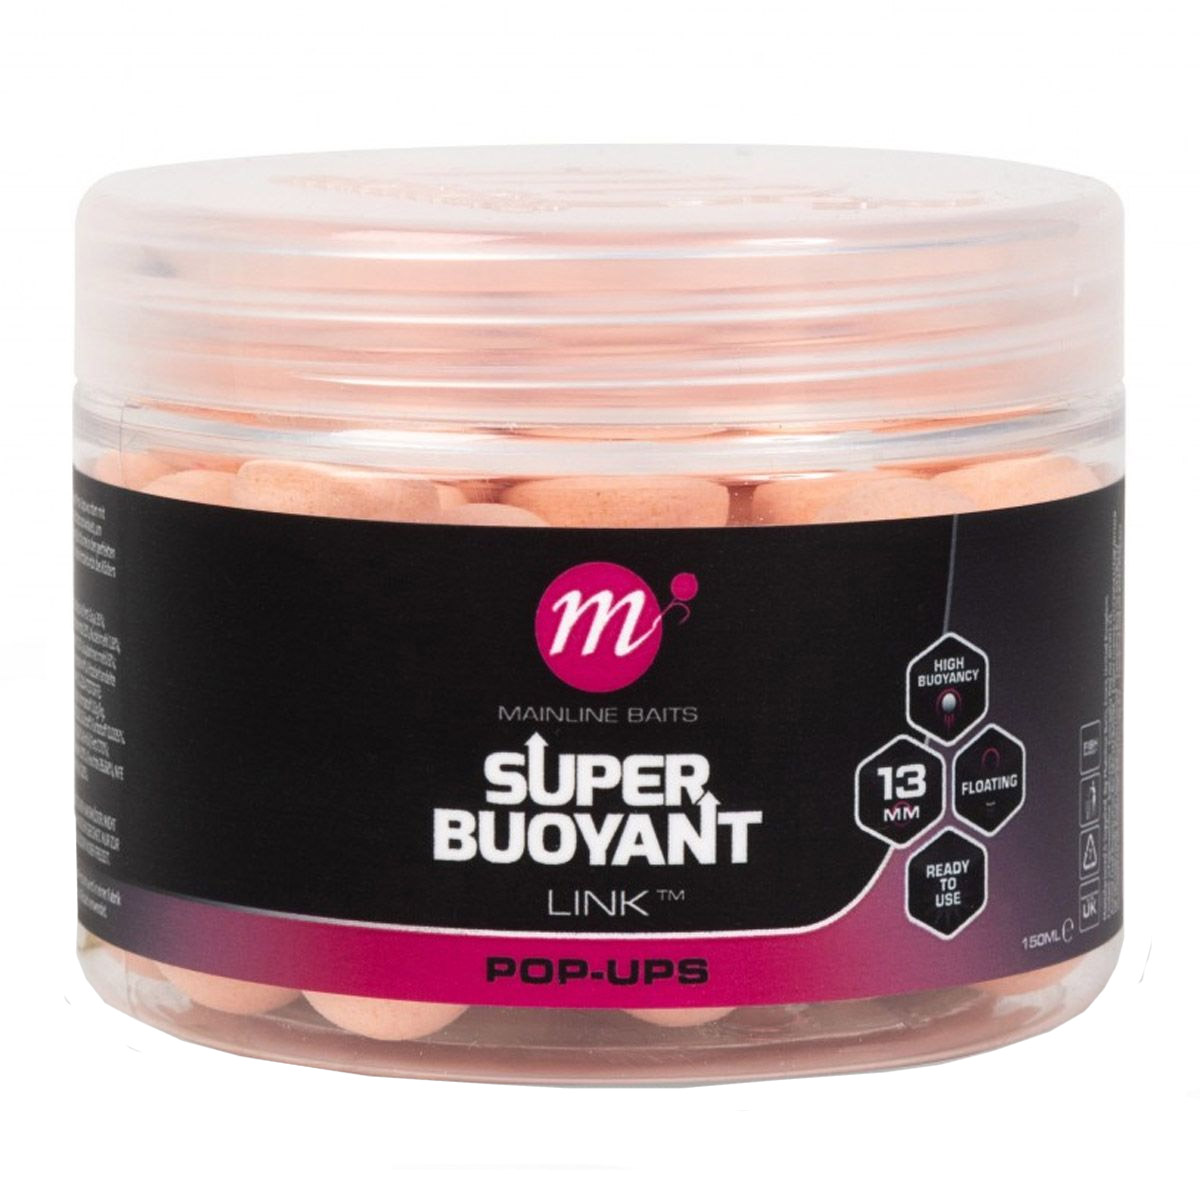 Mainline Super Buoyant Pop-Ups Pink 13 MM